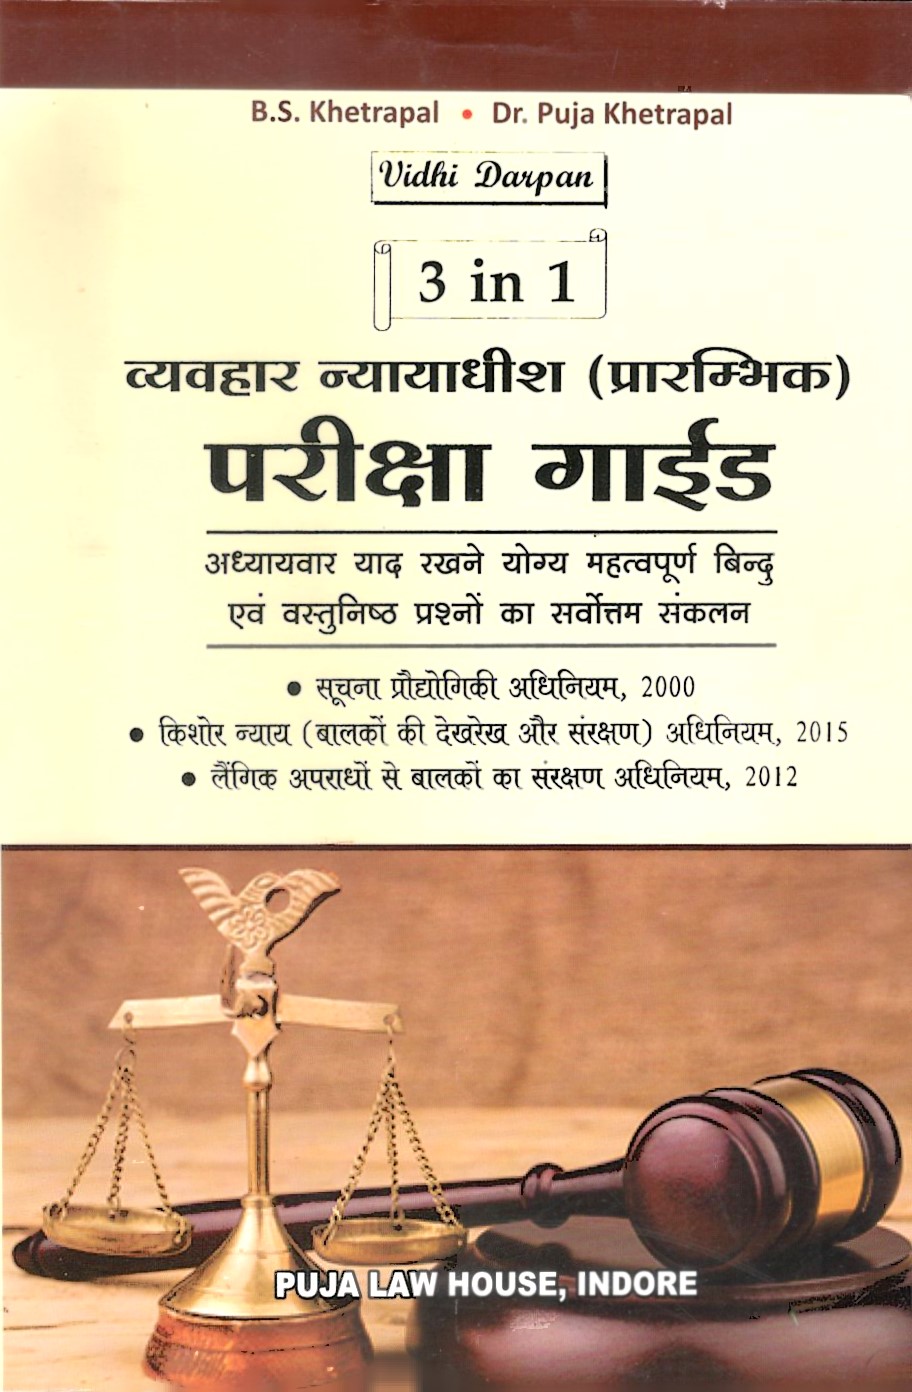 विधि दर्पण 3 इन 1 व्यवहार न्यायाधीश (प्रारम्भिक) परीक्षा गाइड / Vidhi Darpan 3 in 1 Civil Judge (Preliminary) Exams. Guide in Hindi